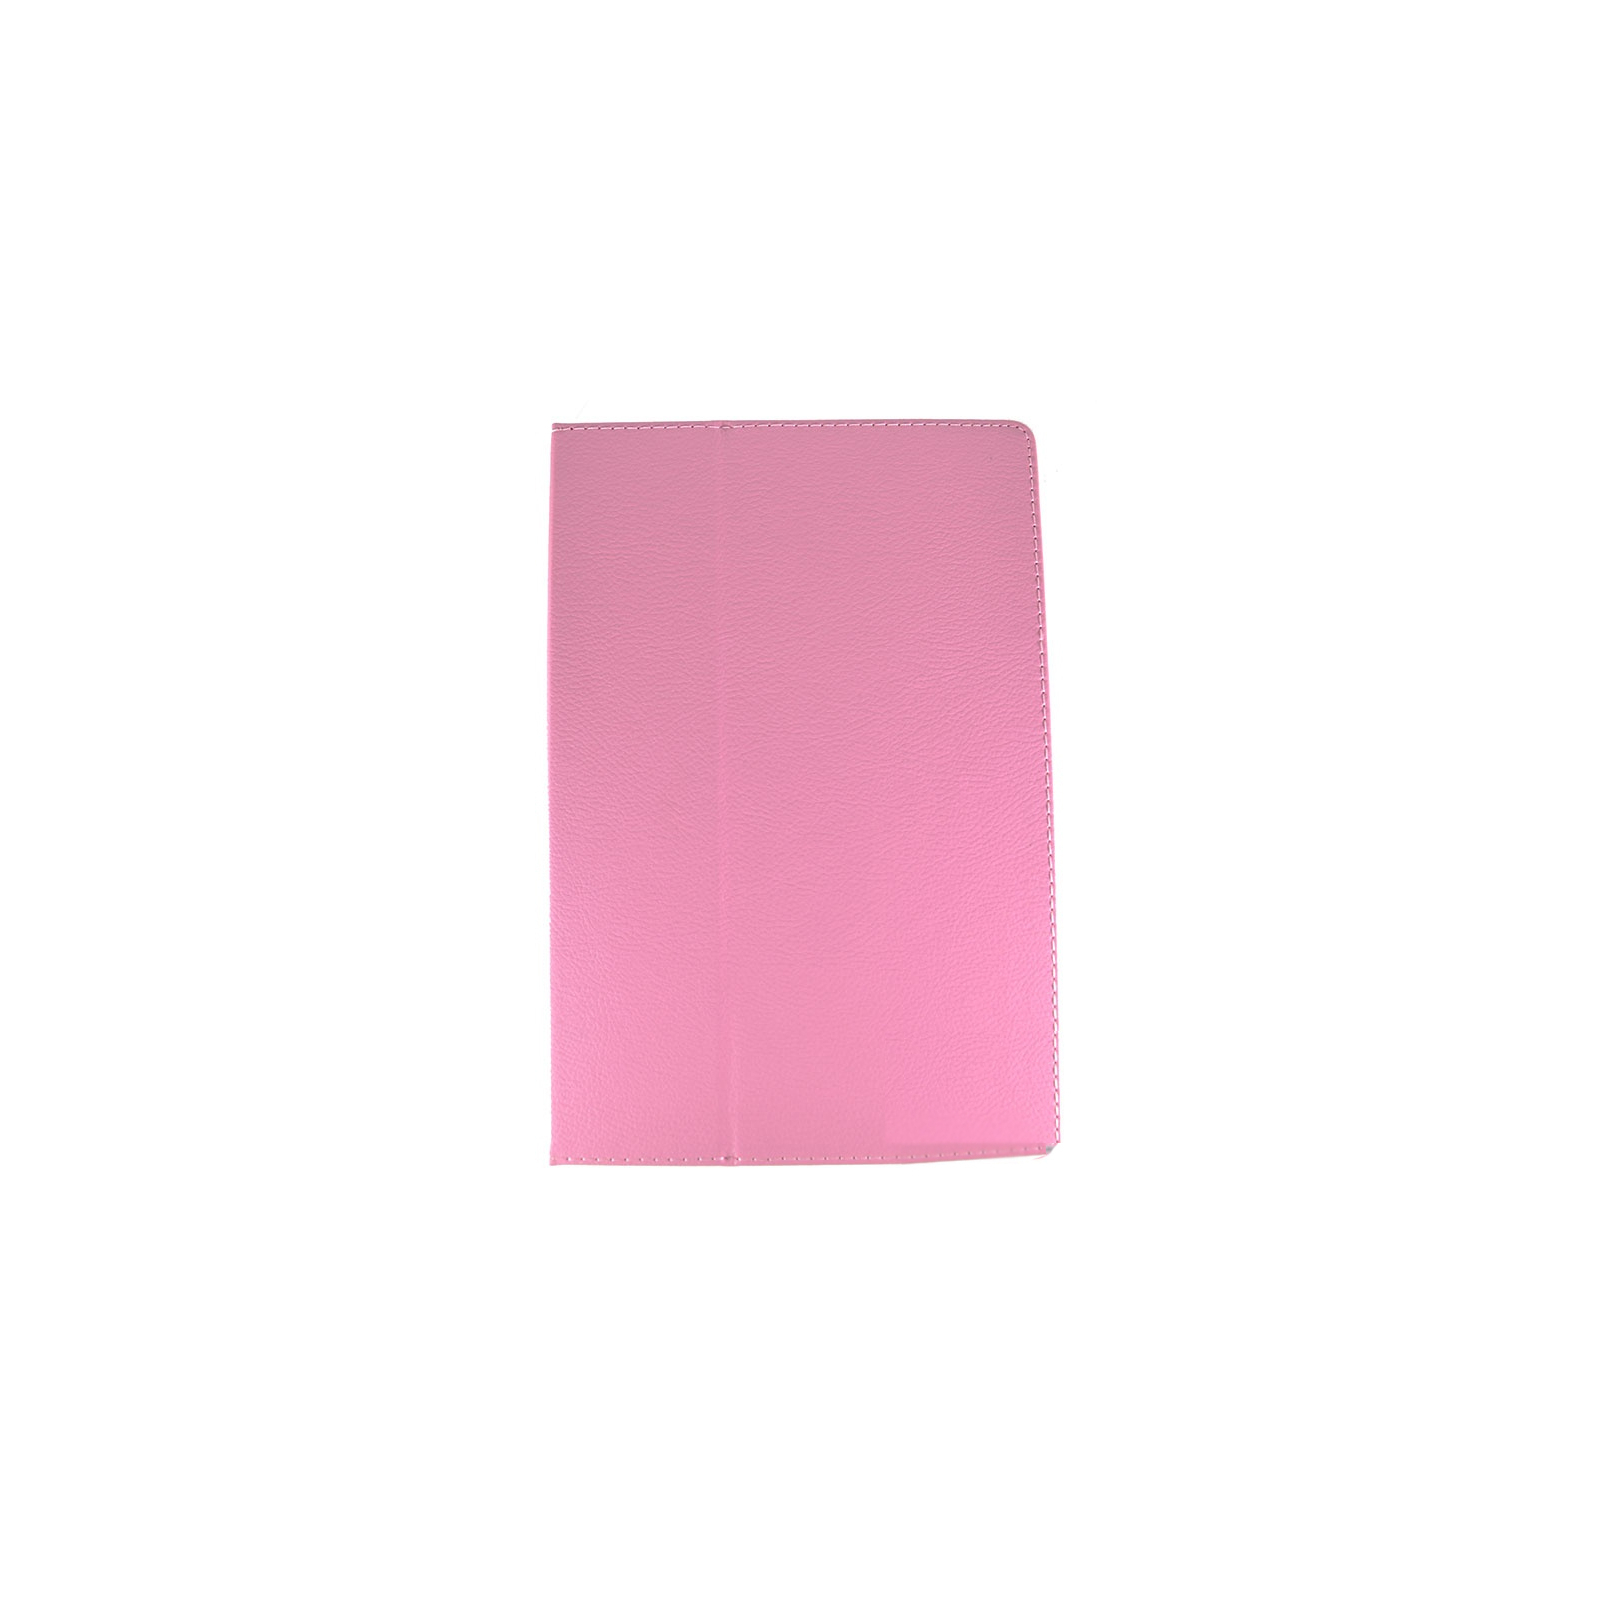 Чехол для планшета Pro-case 10" Pro-case Lenovo A10-70 A7600 10" pink (PC A10-70 A7600 pink)